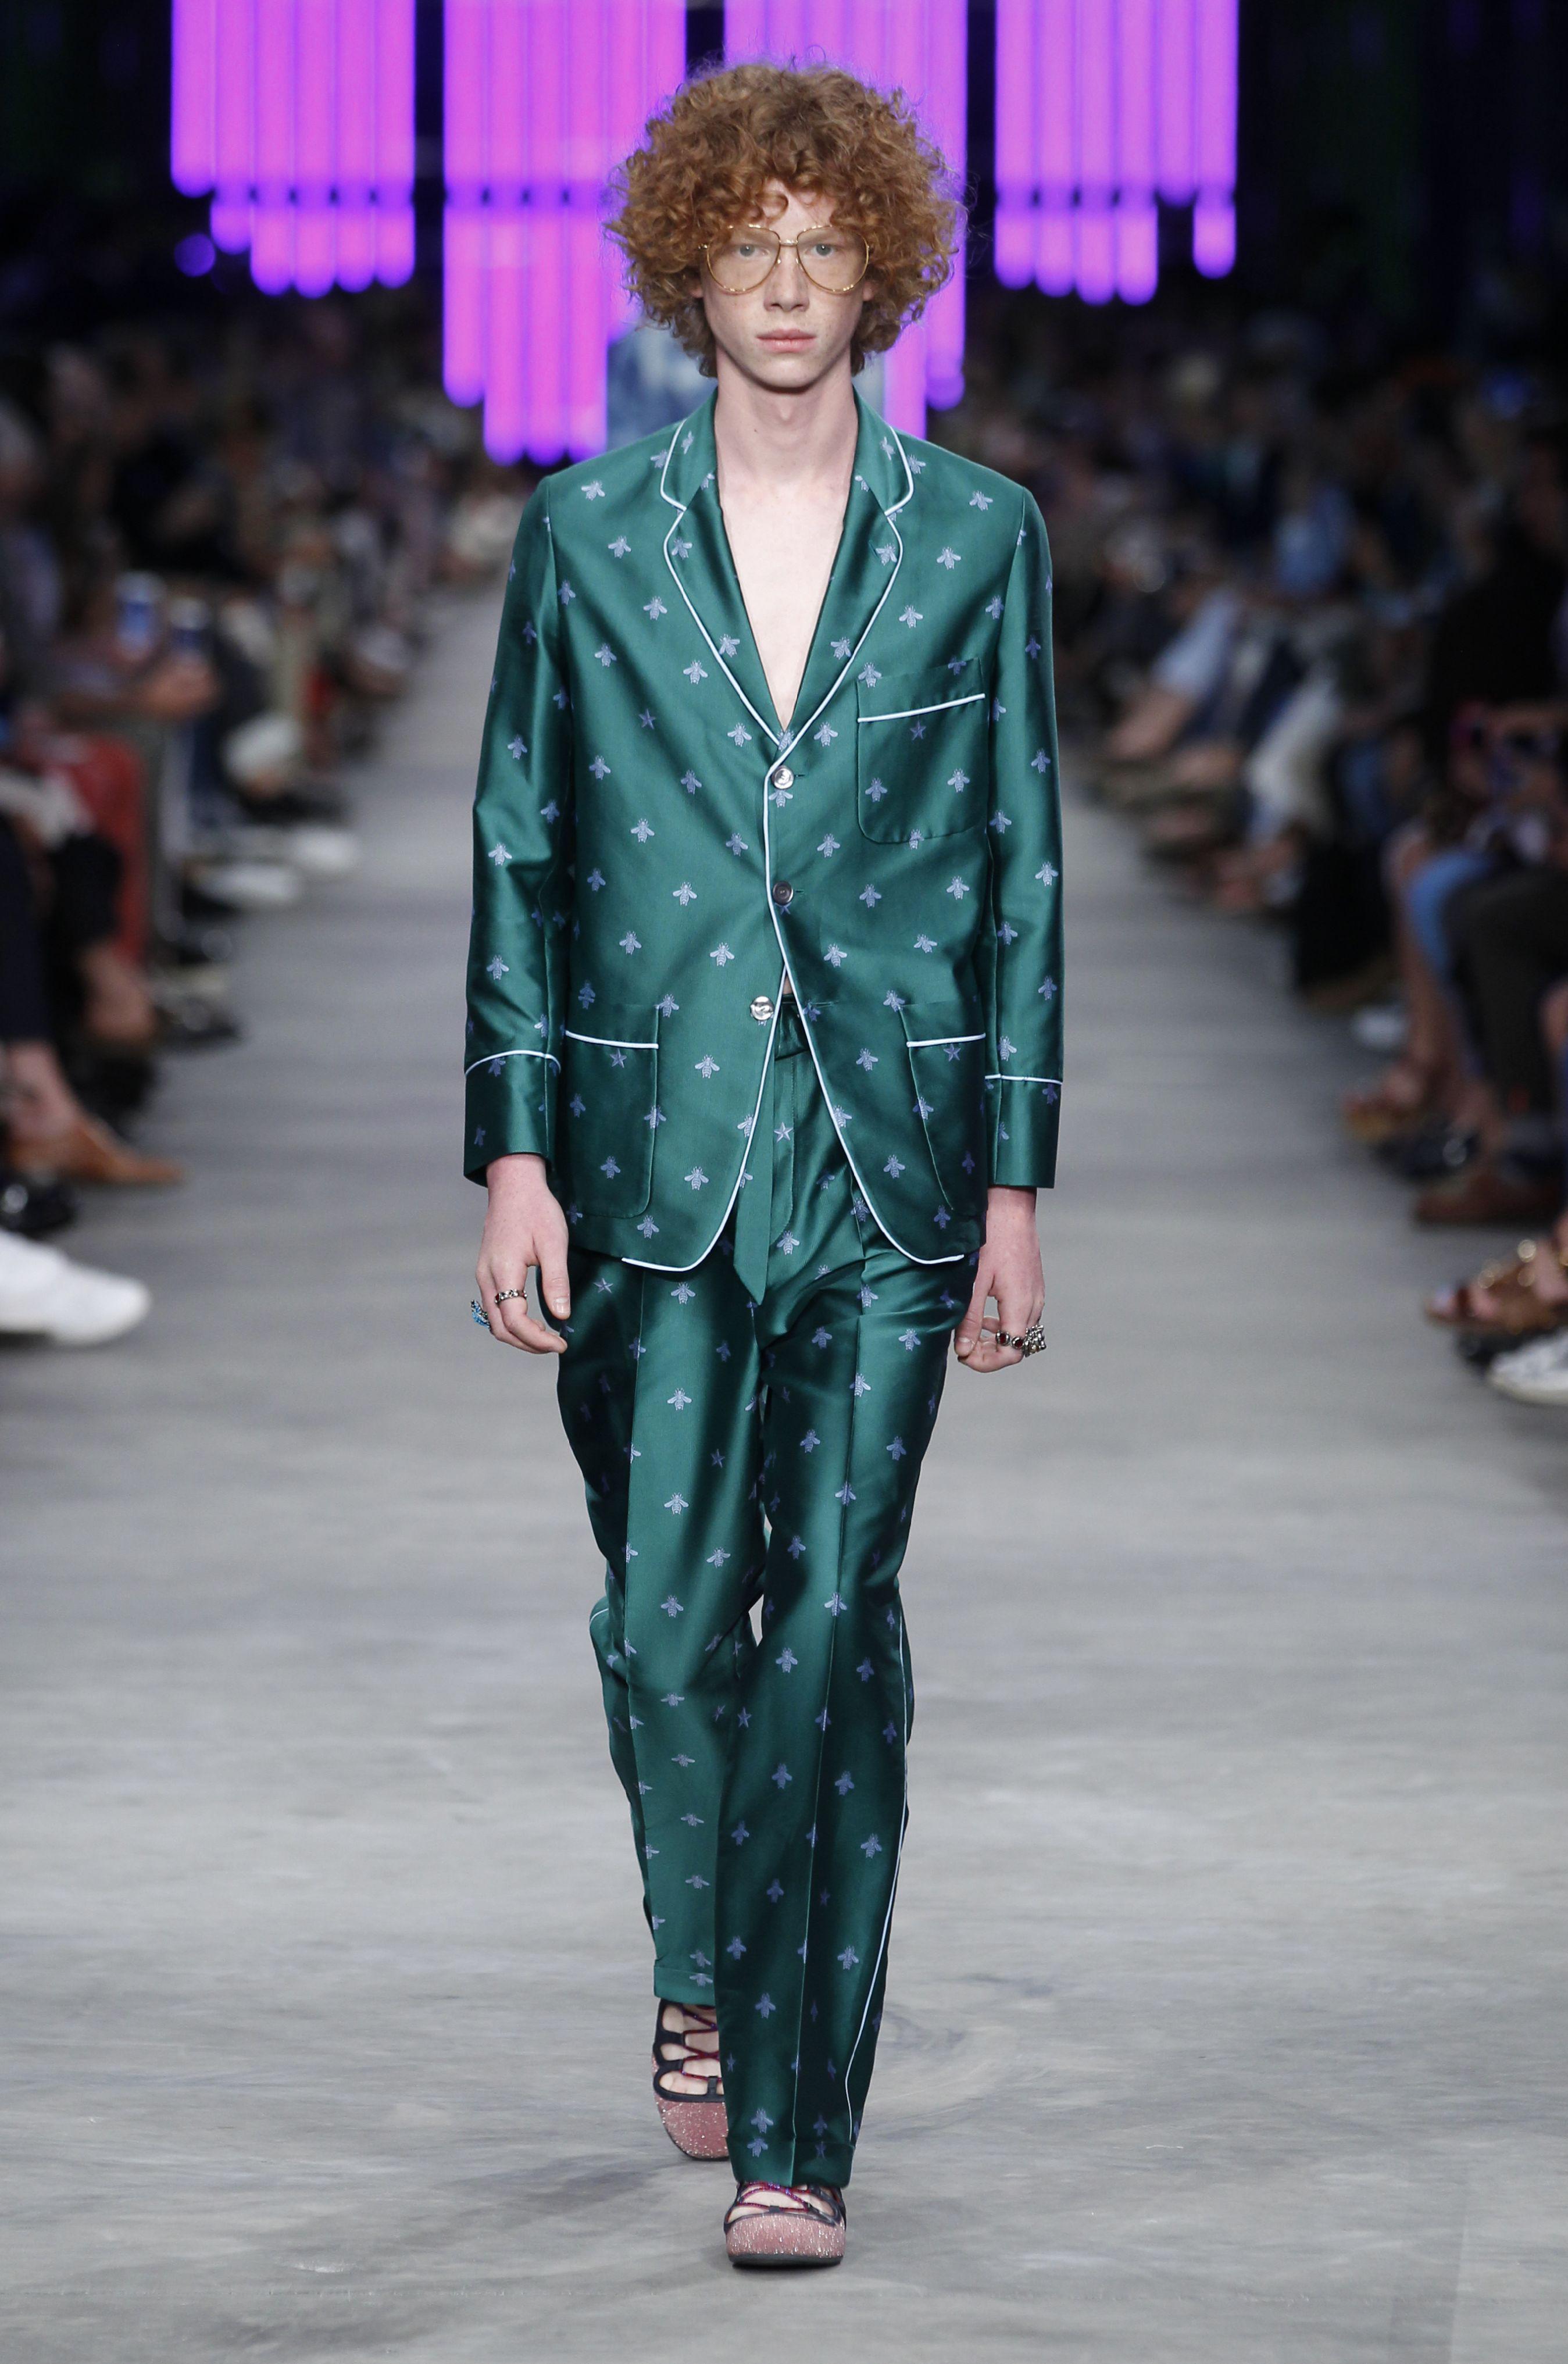 Uno dei pezzi chiave della collezione uomo per la primavera/estate 2015-2016 di Gucci: pigiama in raso abbinato a pantoufles-ballerine con i lacci